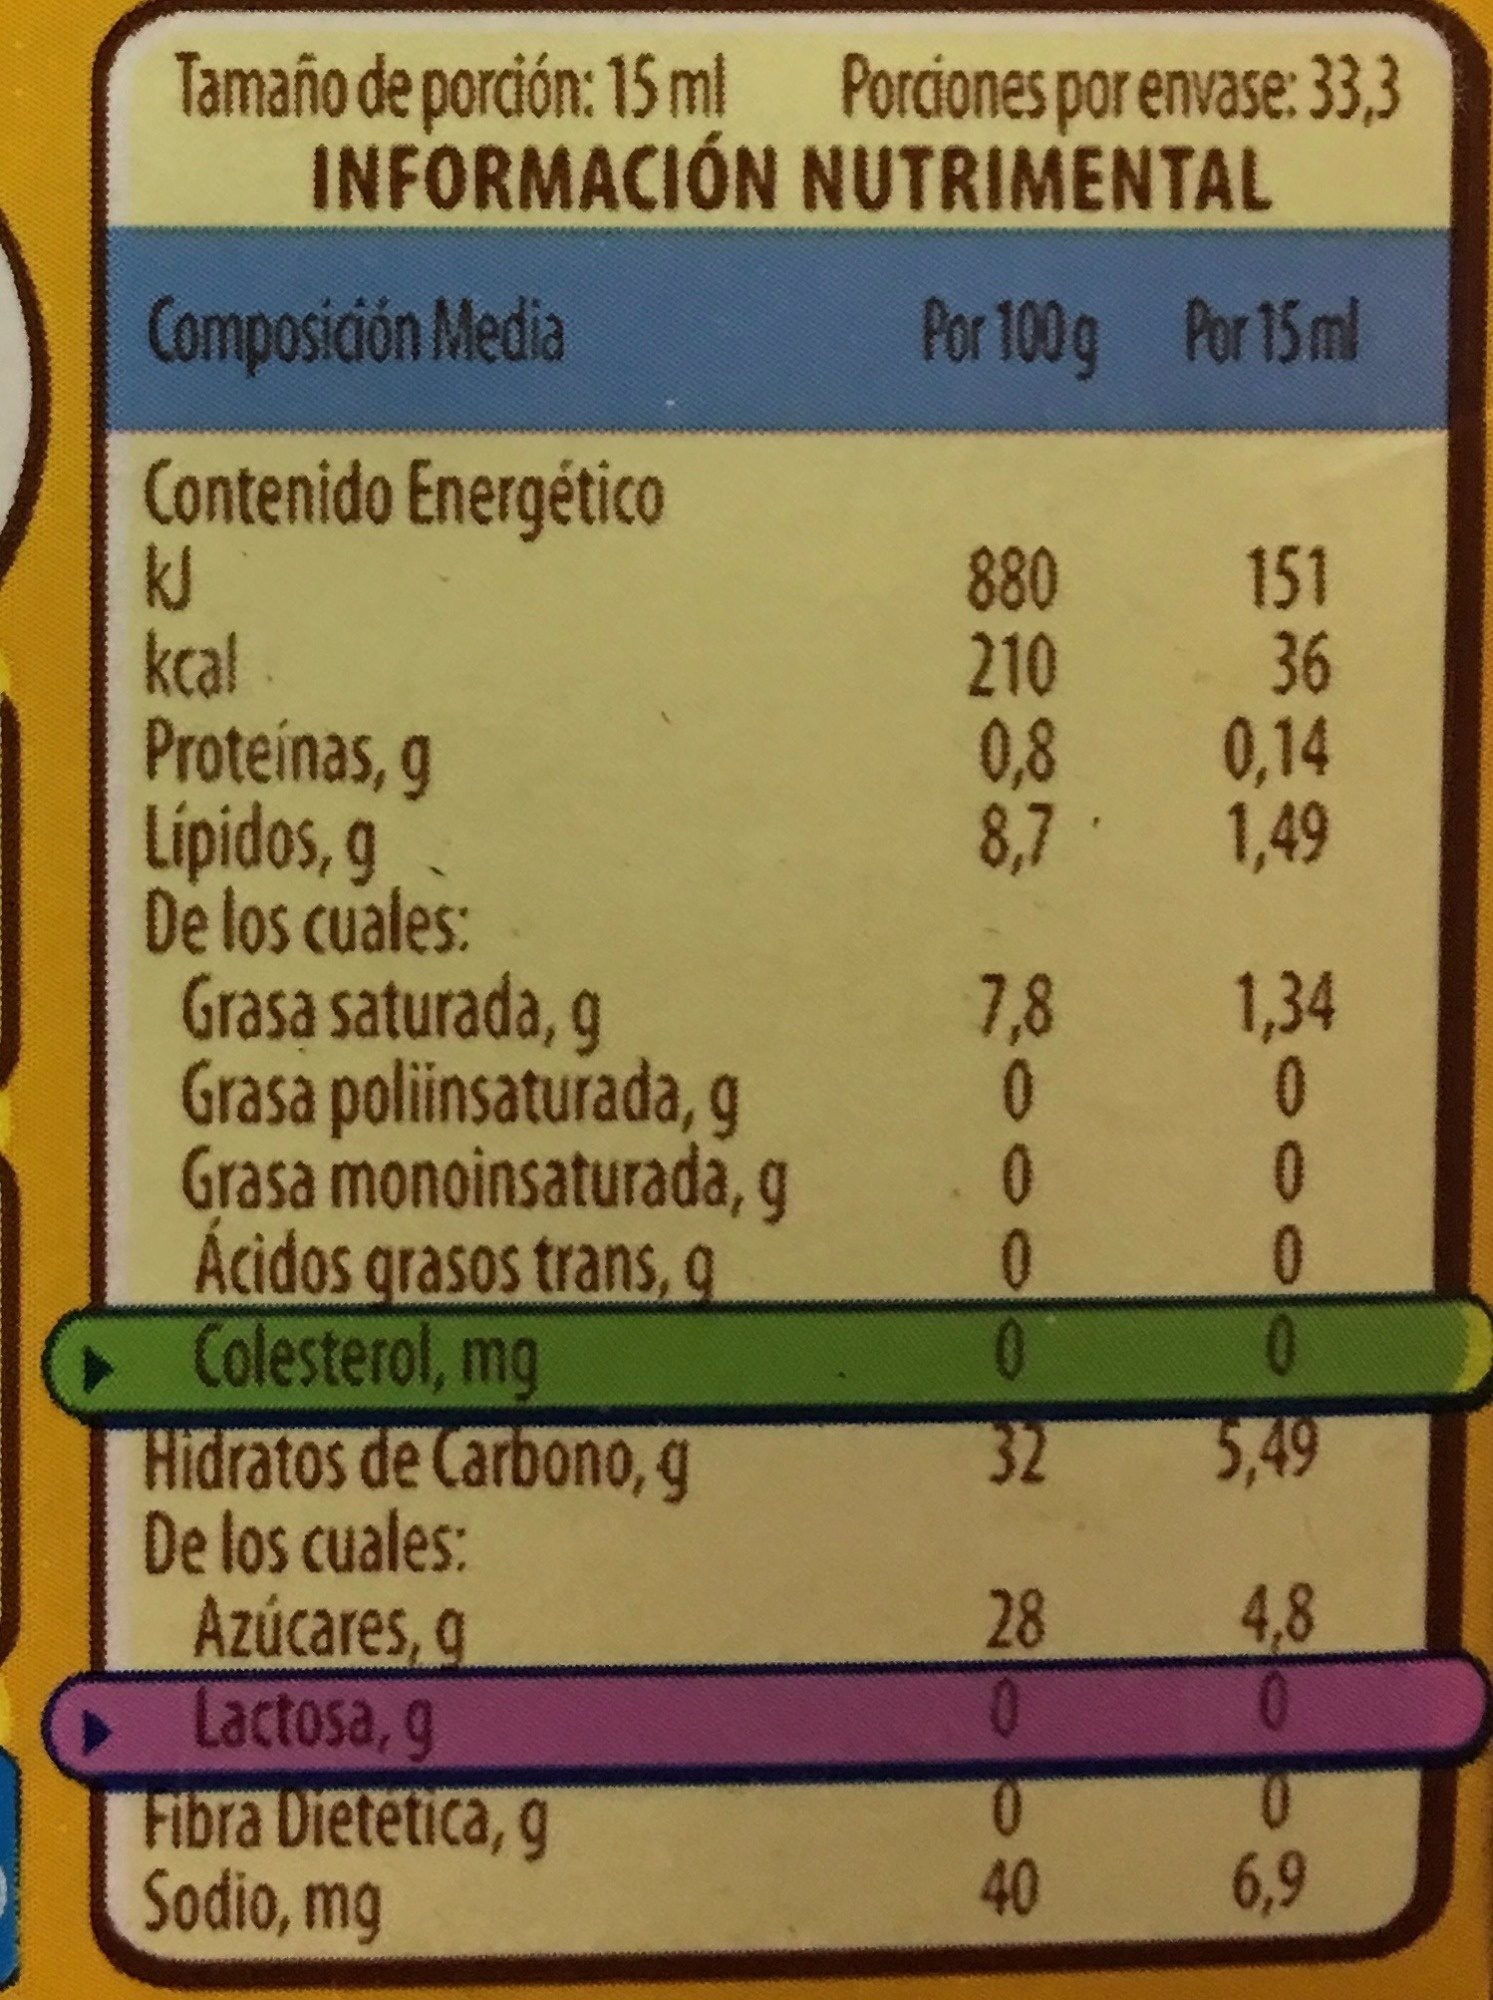 COFFEE MATE AVELLANA - Información nutricional